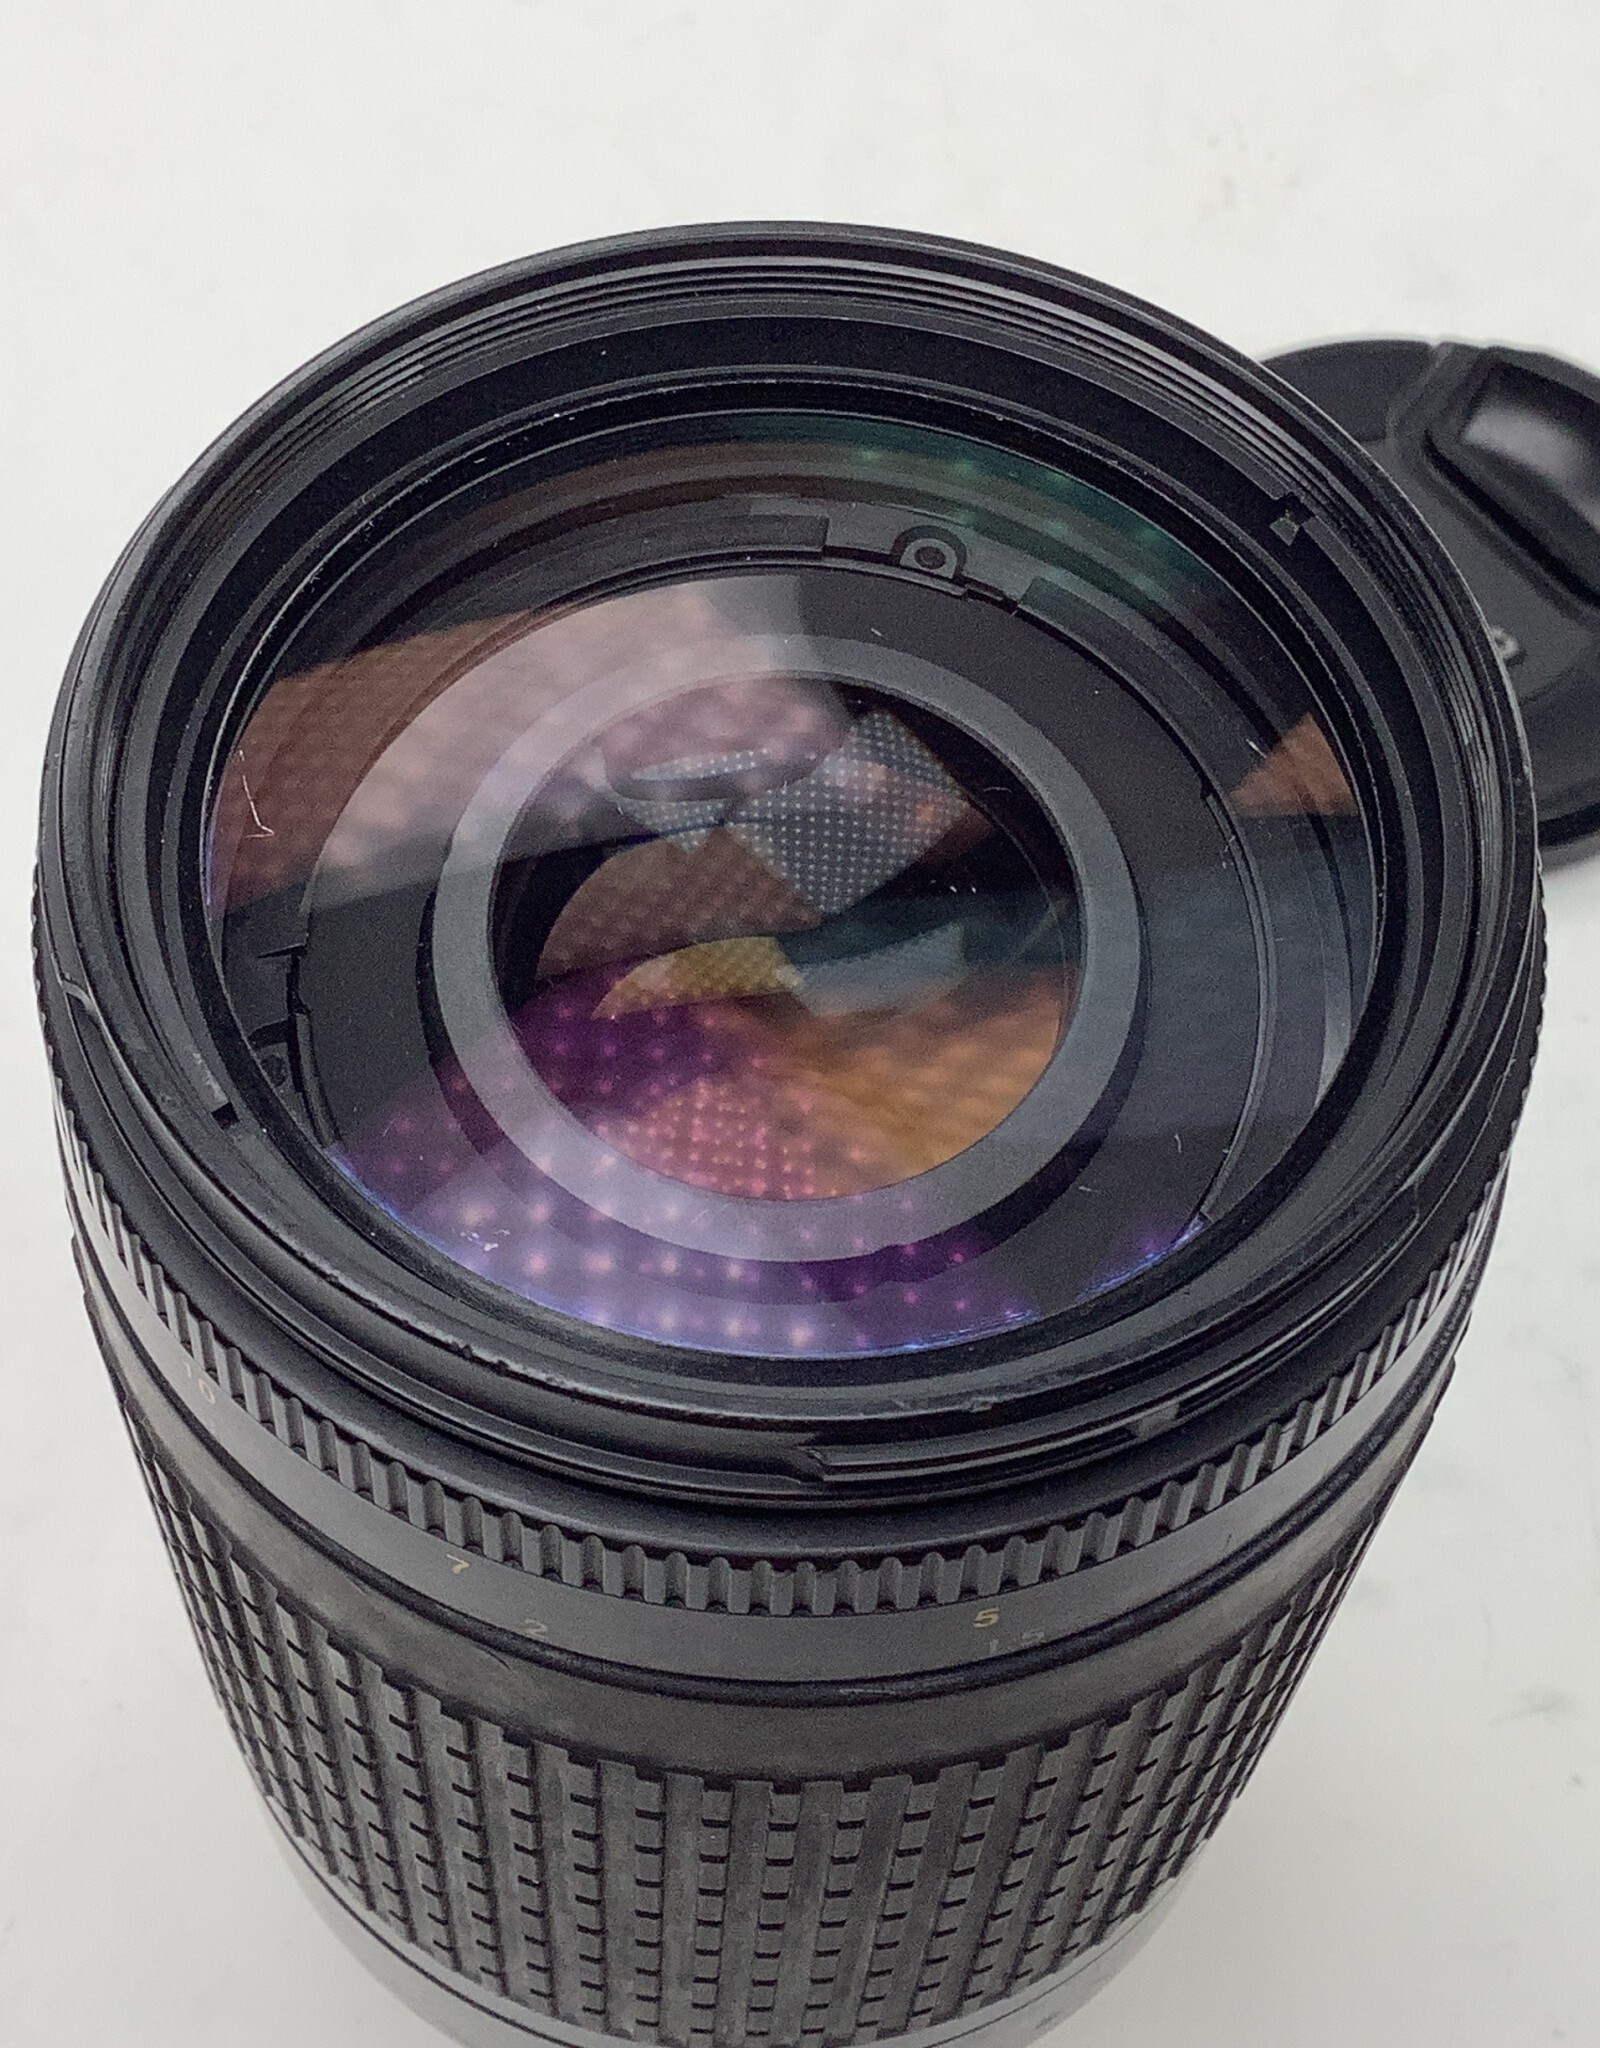 NIKON Nikon AF Nikkor 70-300mm f4-5.6 G Lens Used Fair